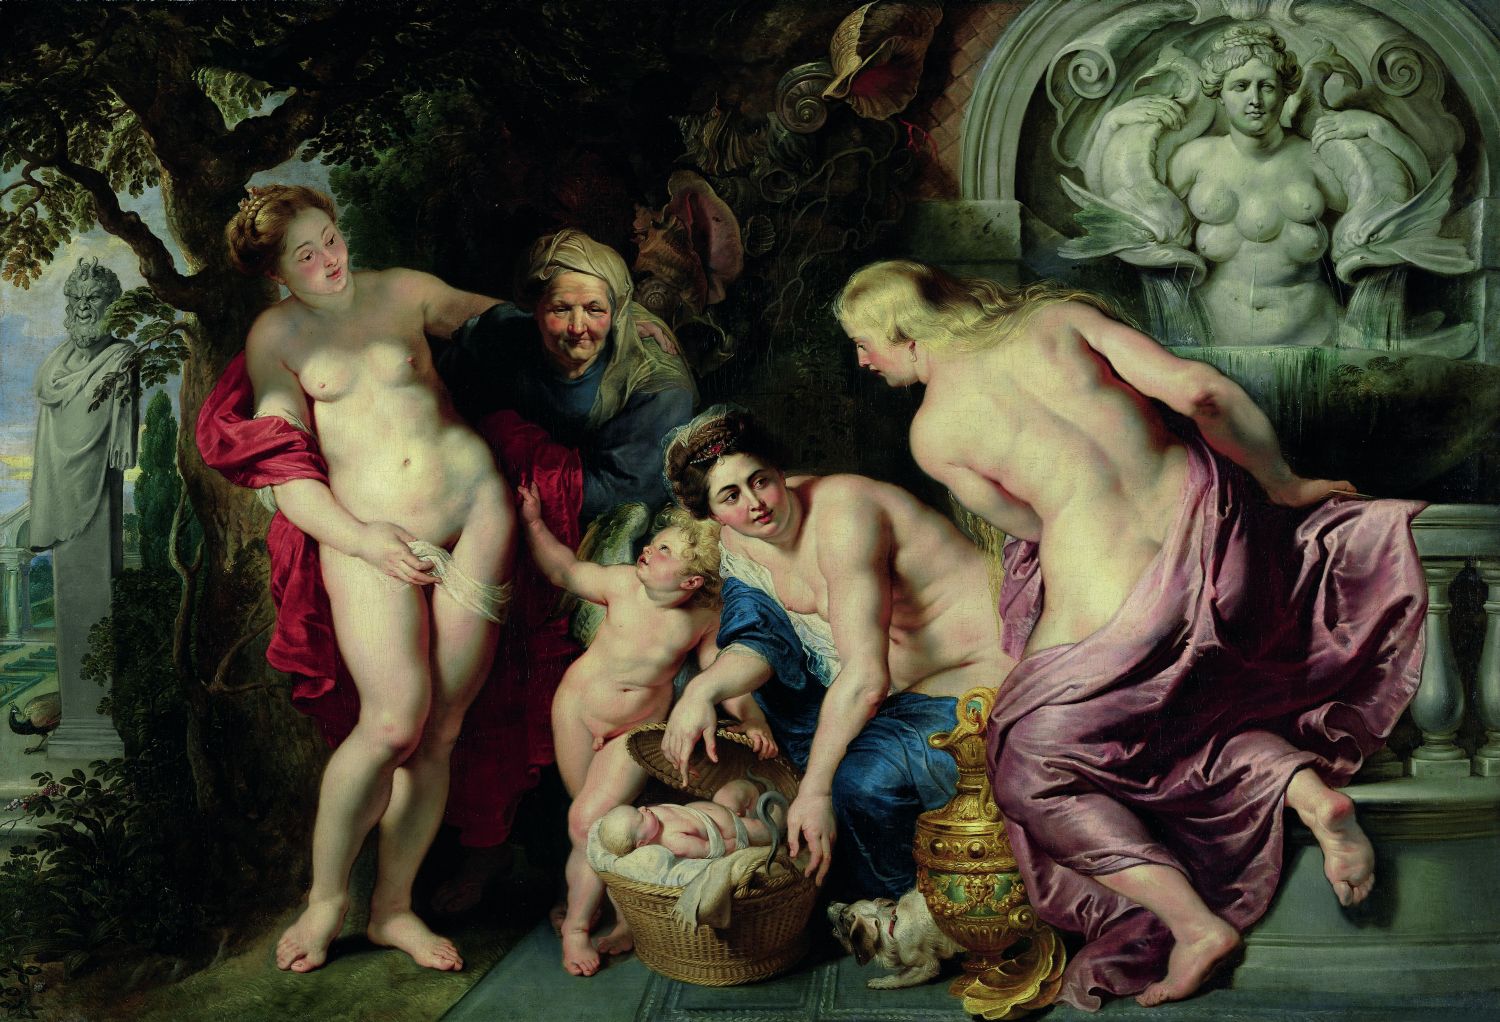 Pietro Paolo Rubens, La scoperta di Erittonio fanciullo, 1615-16 – olio su tela – Vienna, Palazzo Liechtenstein – The Princely Collections